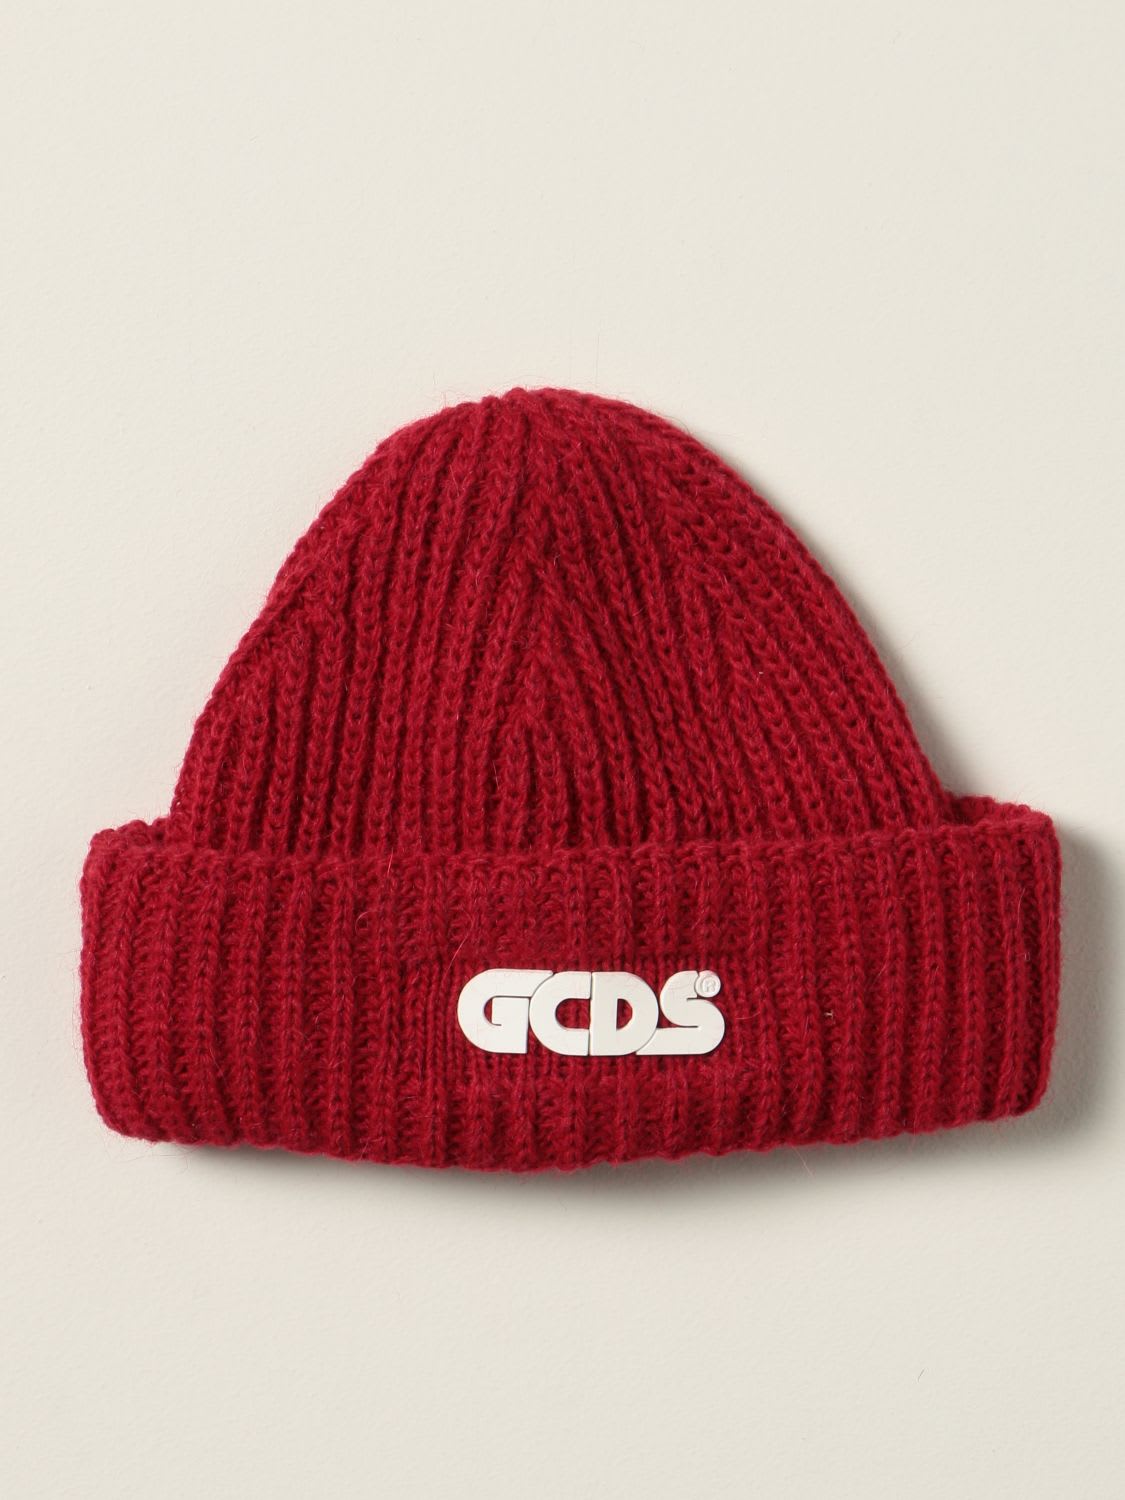 Gcds Hat Hat Men Gcds